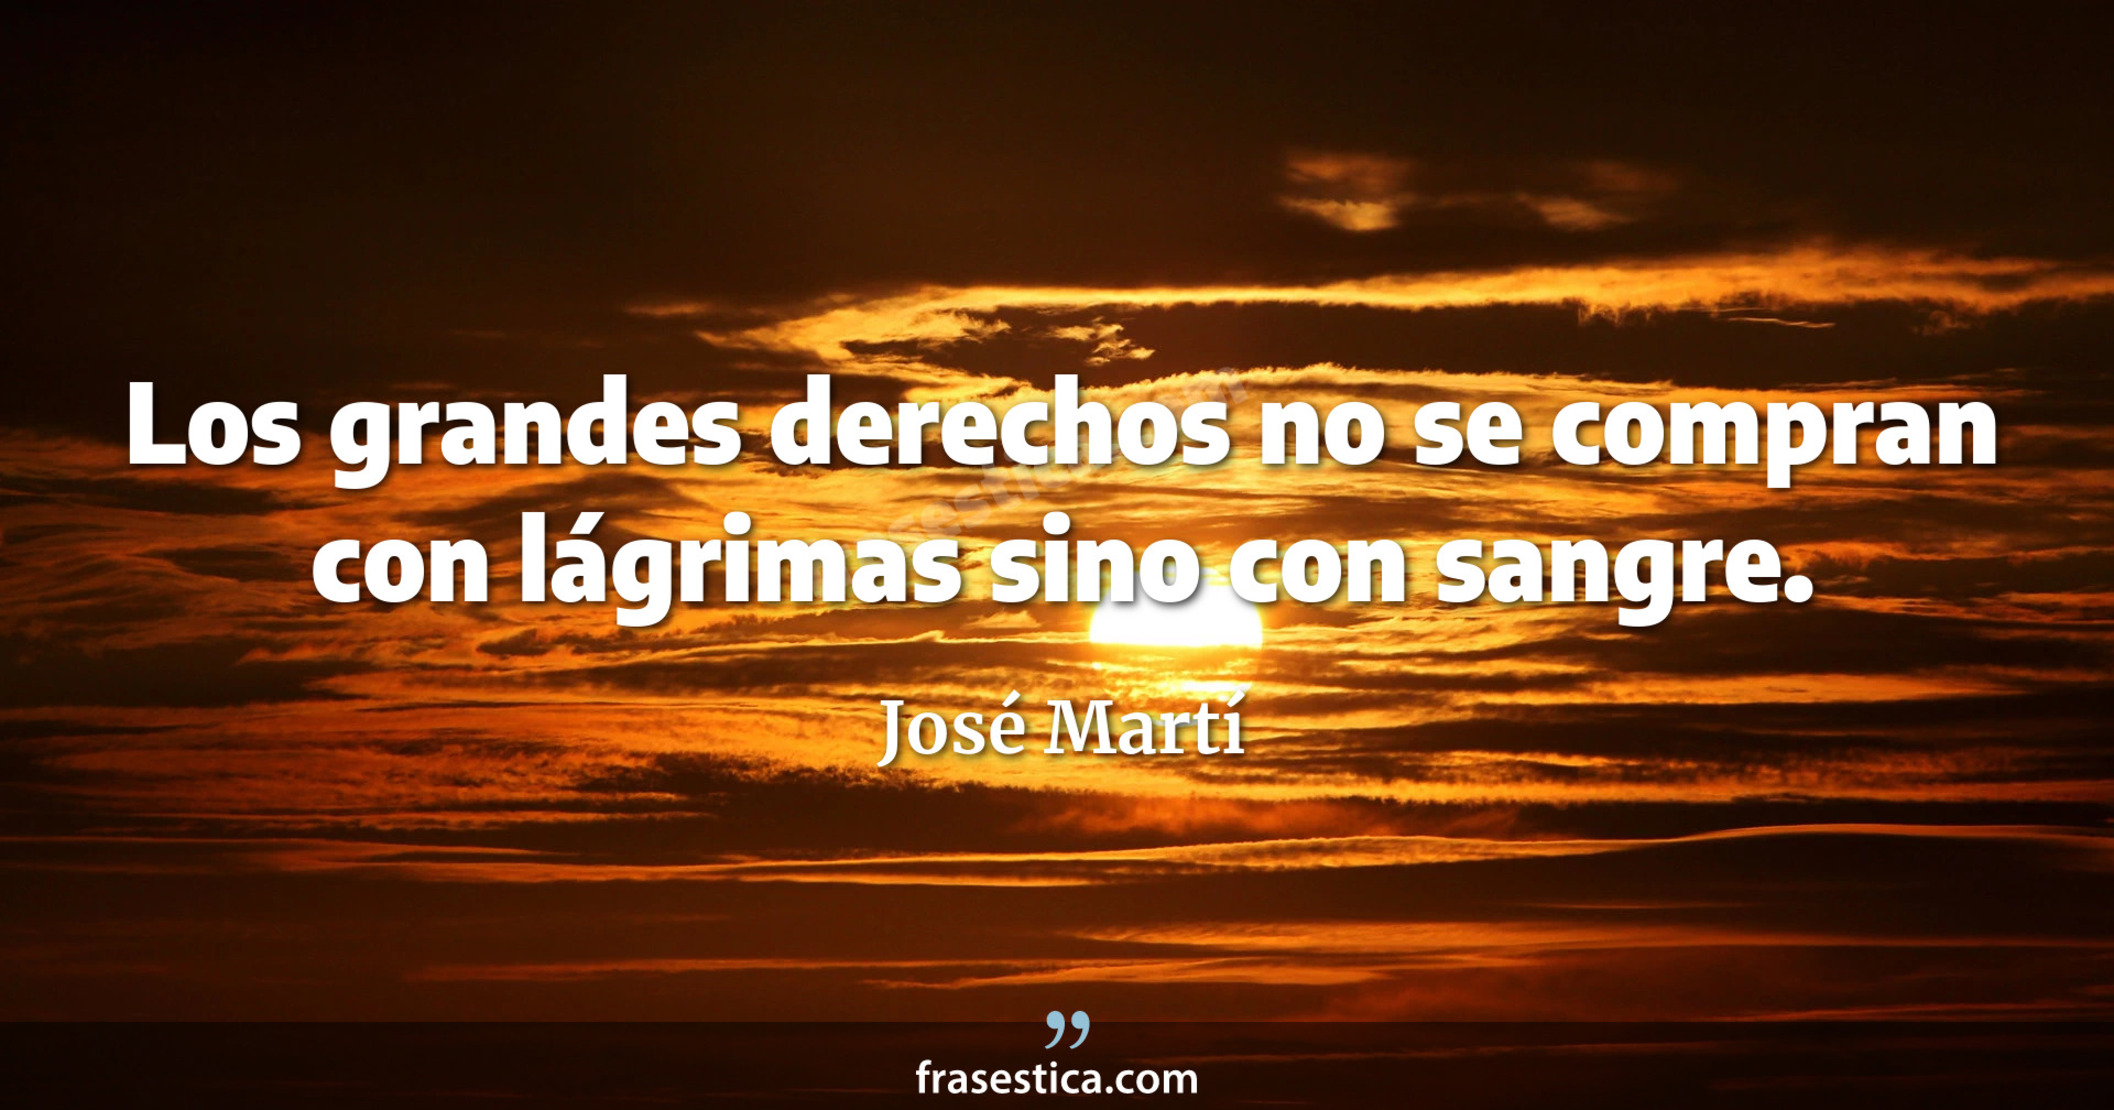 Los grandes derechos no se compran con lágrimas sino con sangre. - José Martí